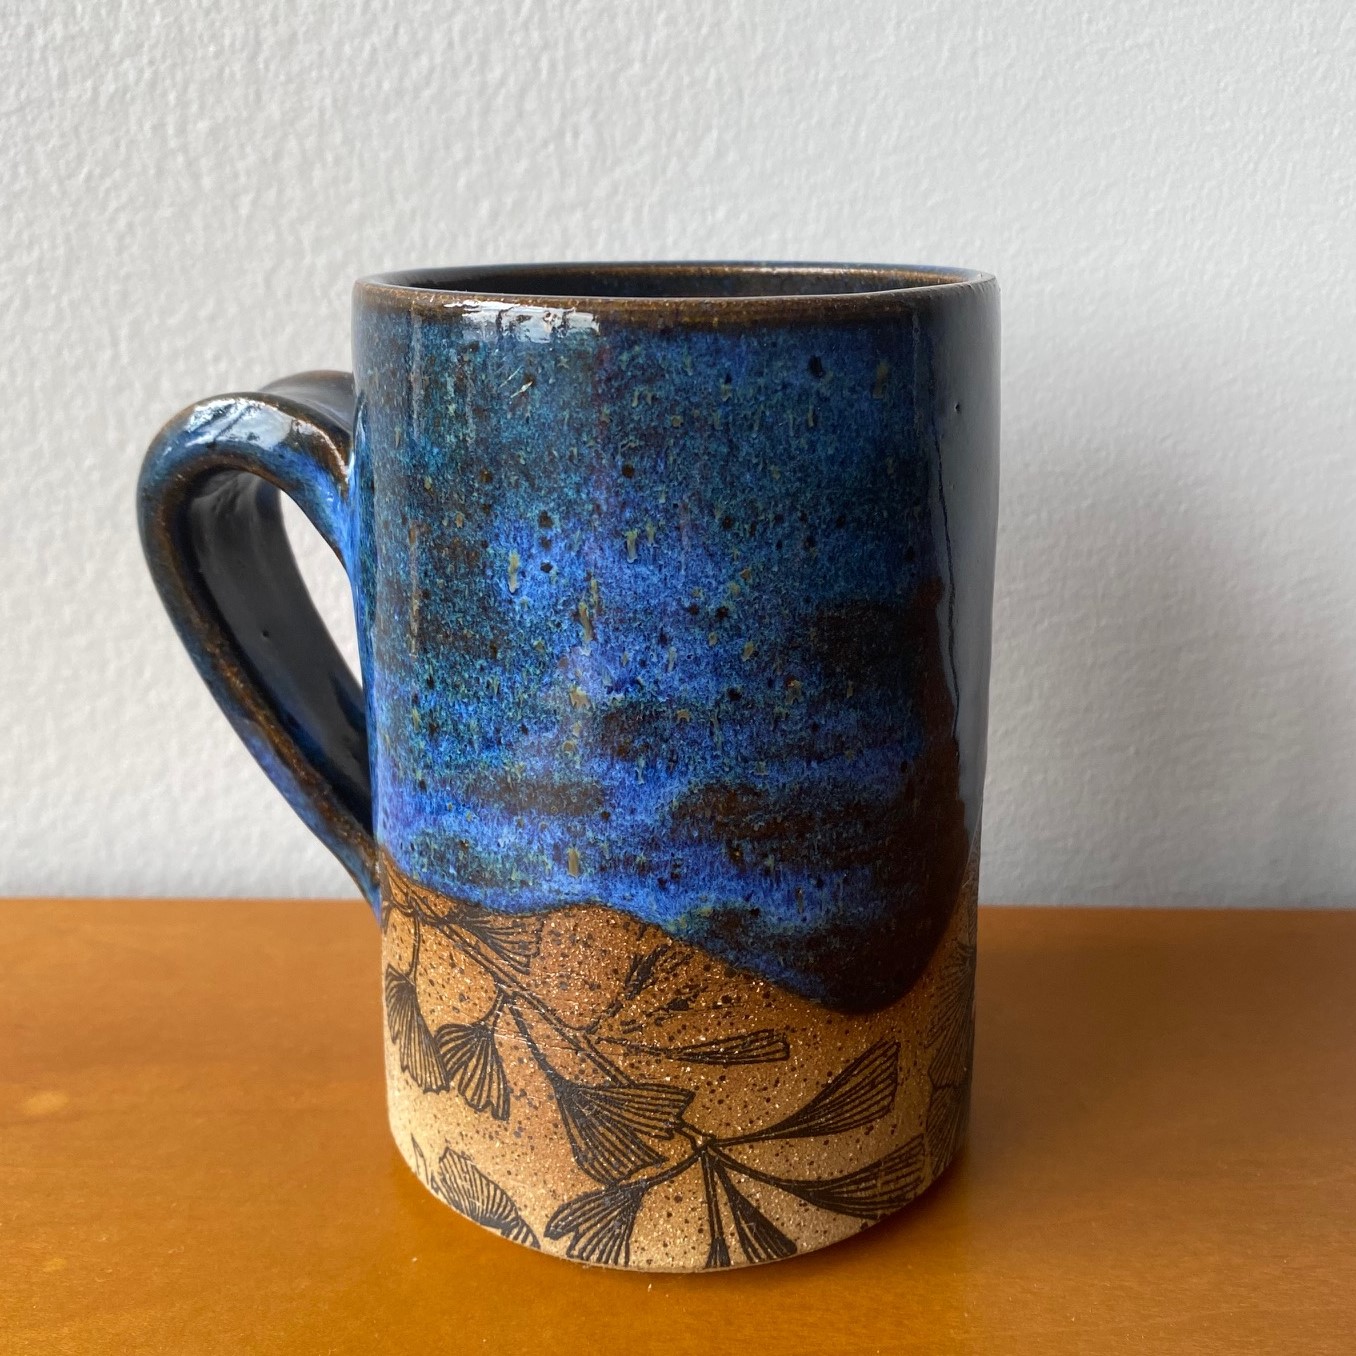 Blue mug with ginkgo leaf pattern